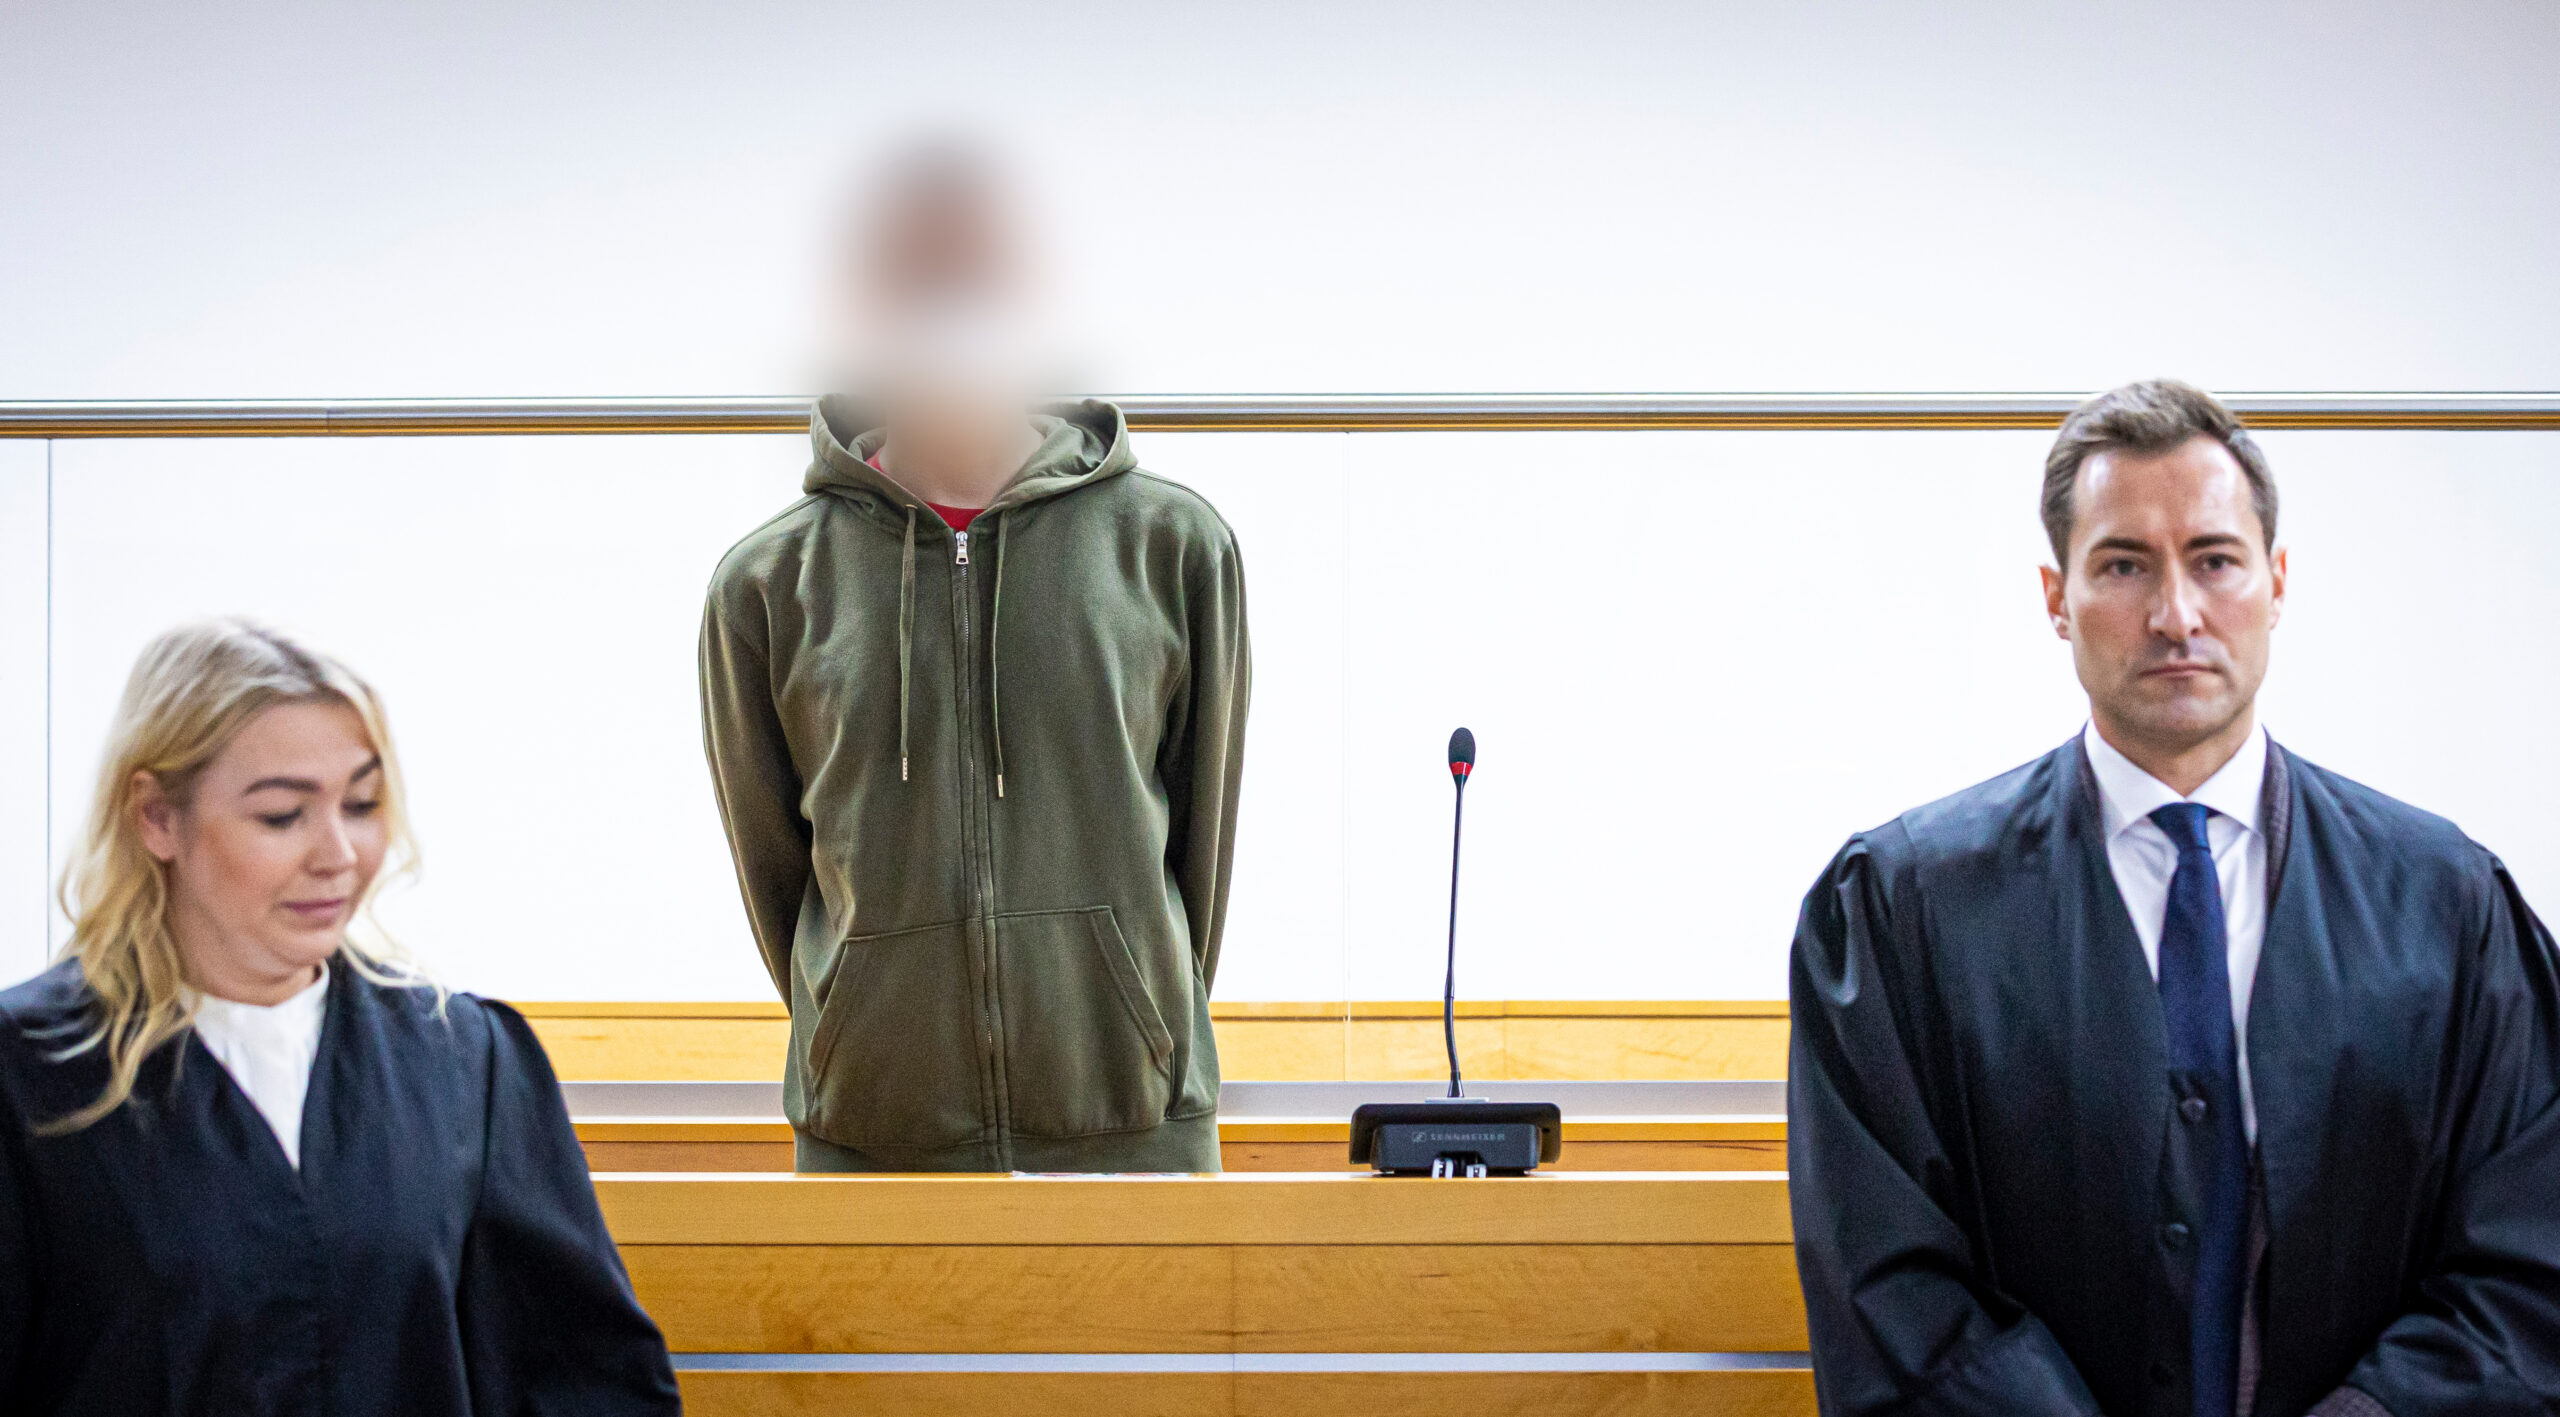 Ein Angeklagter in Olive-grüner Strickjacke steht zwischen seinen Anwälten